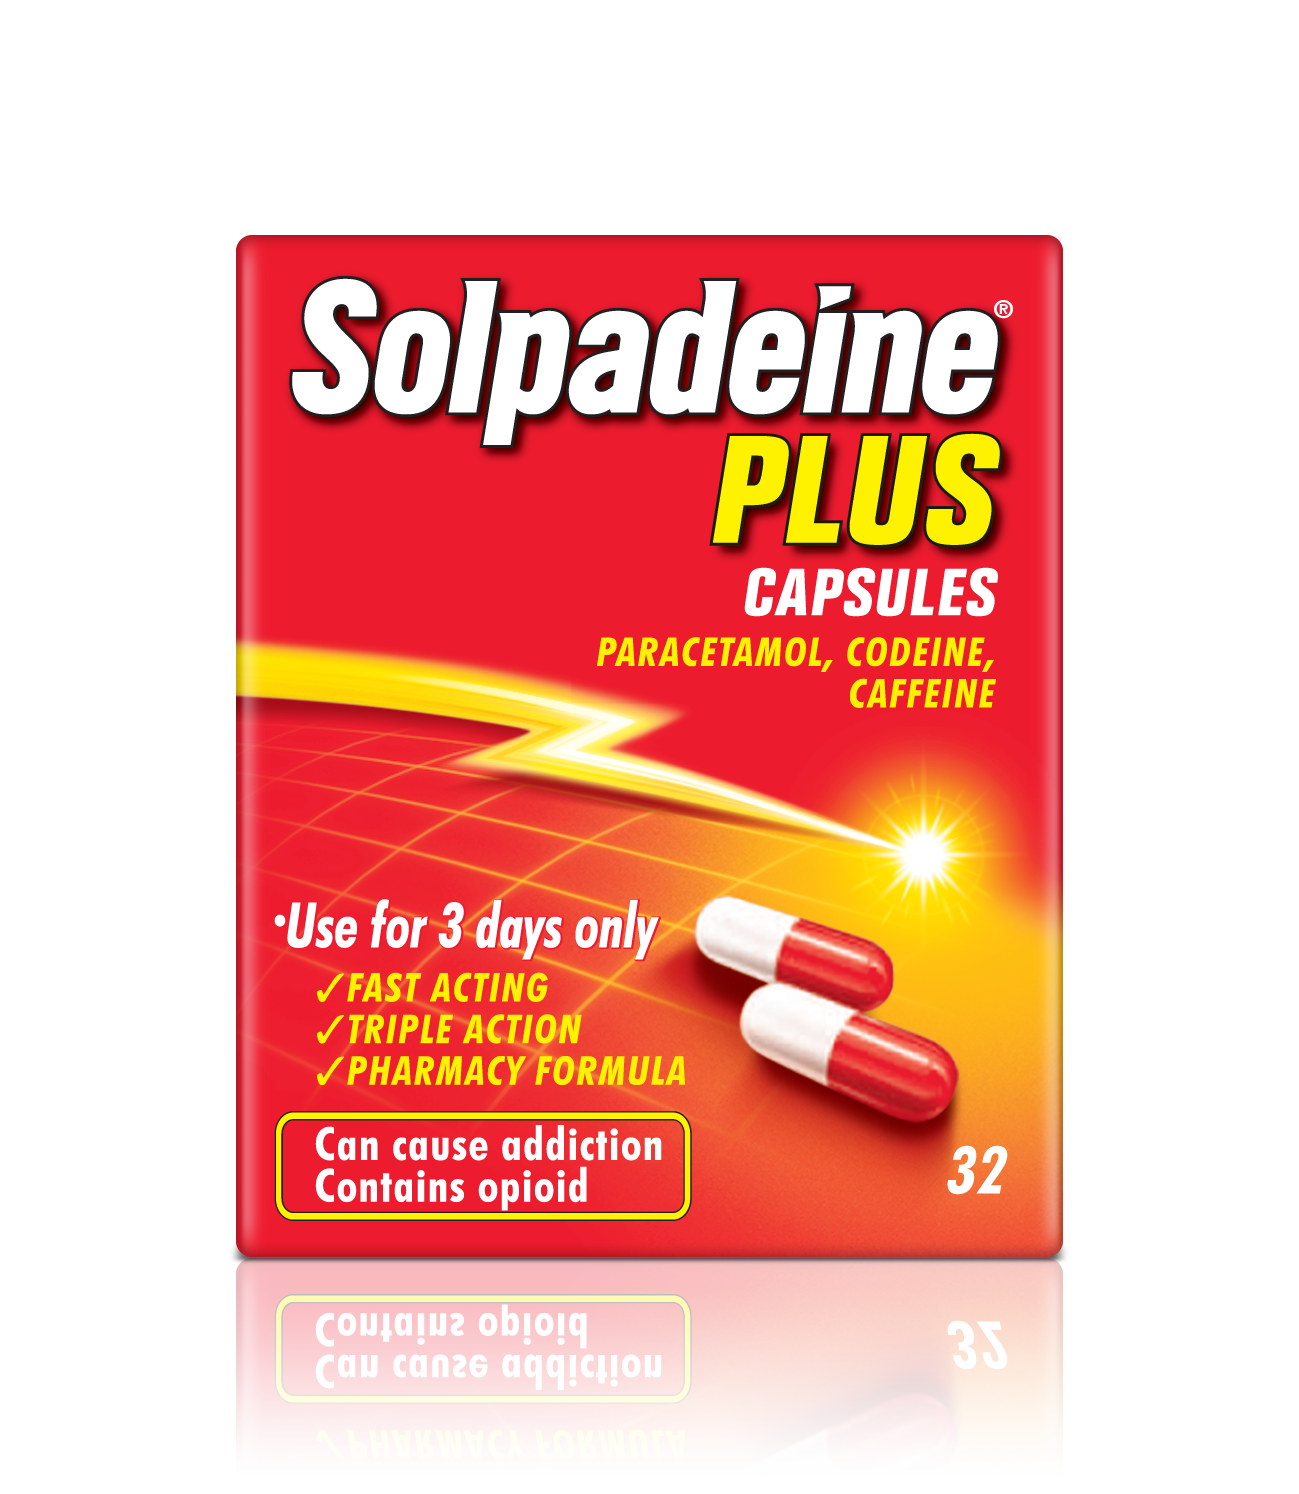 Solpadeine PLUS capsules product packaging